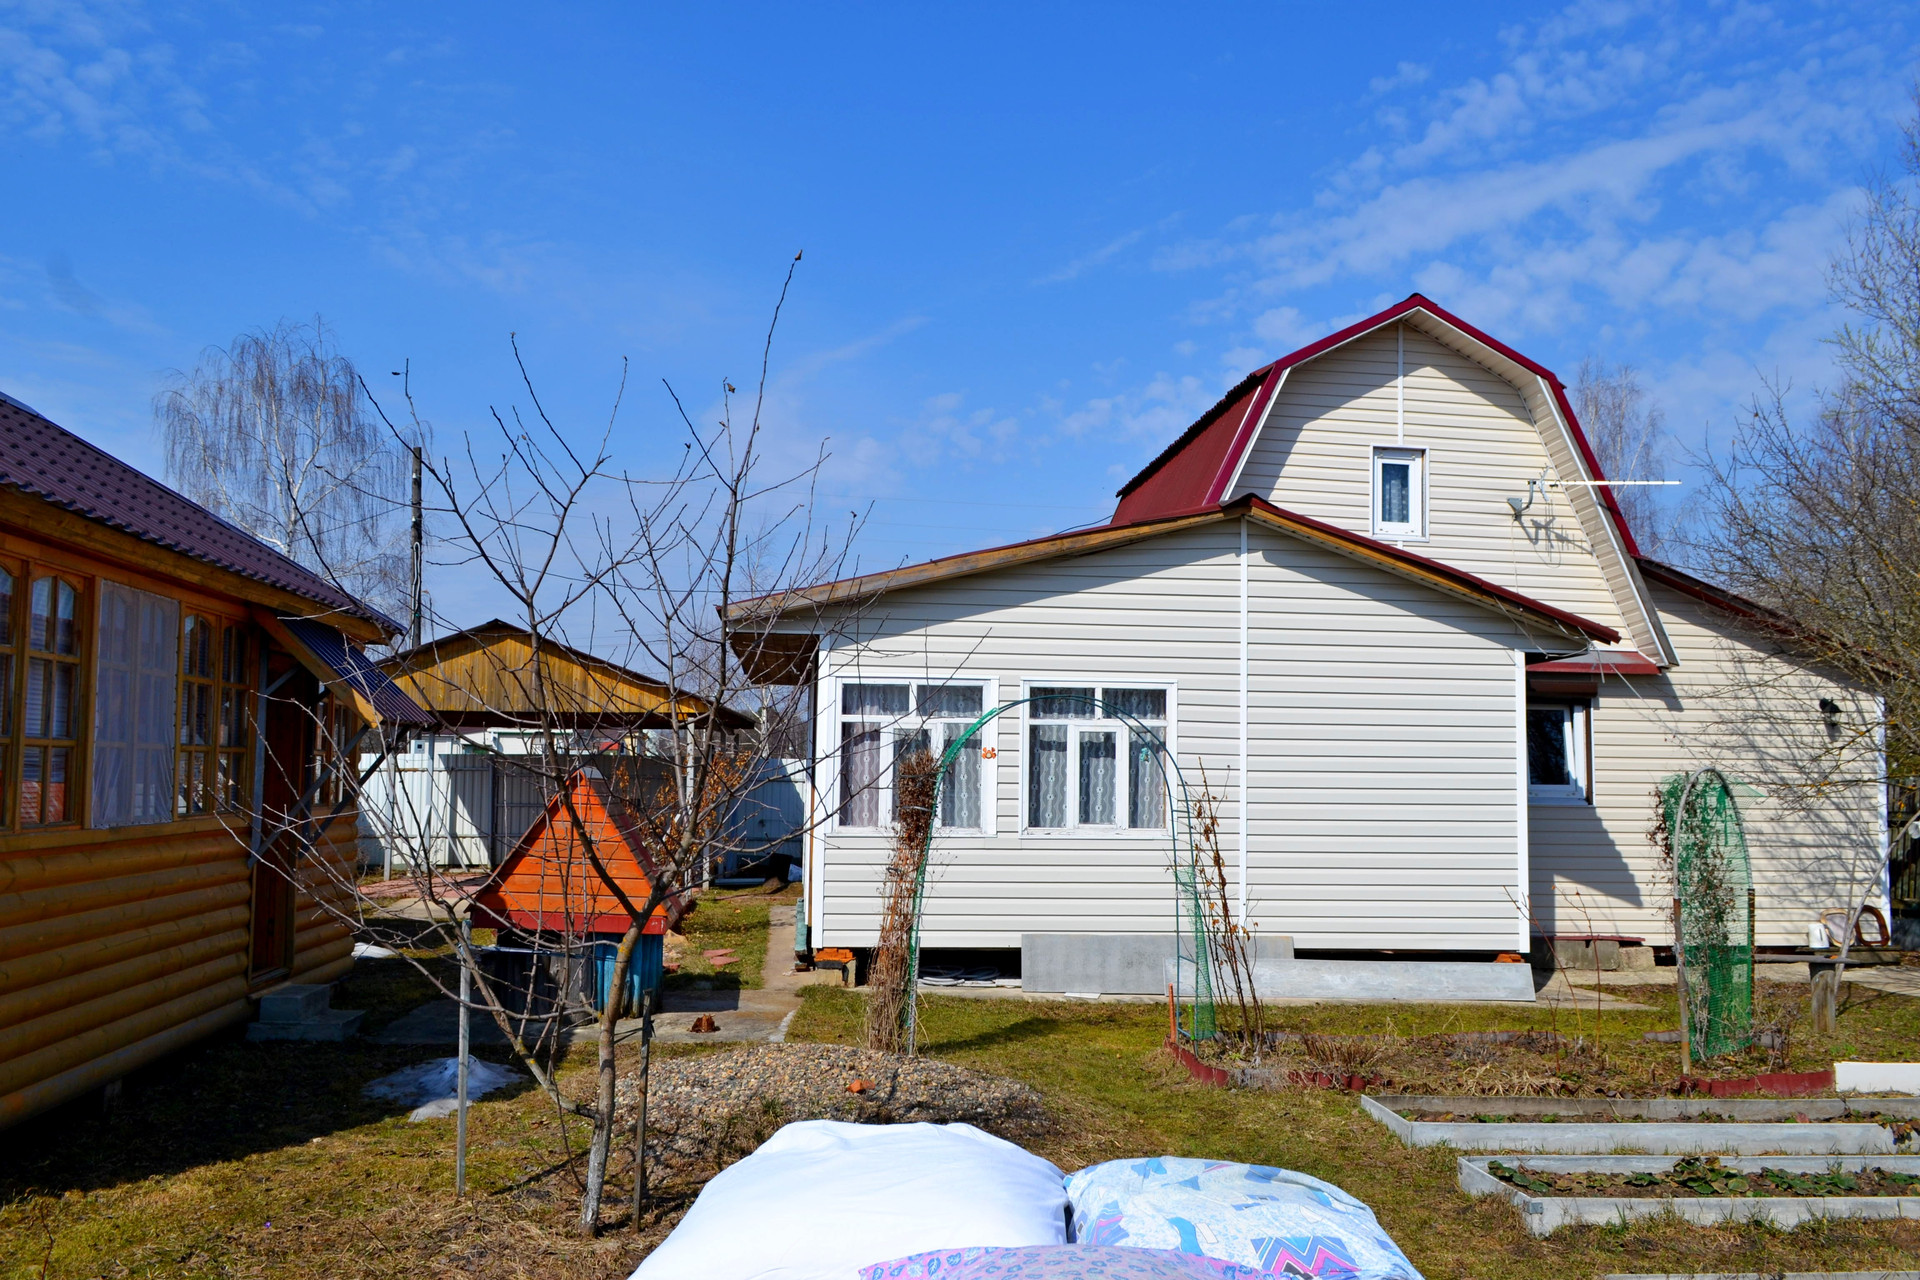 Продажа домов в кичигино увельском районе челябинской области на авито с фото